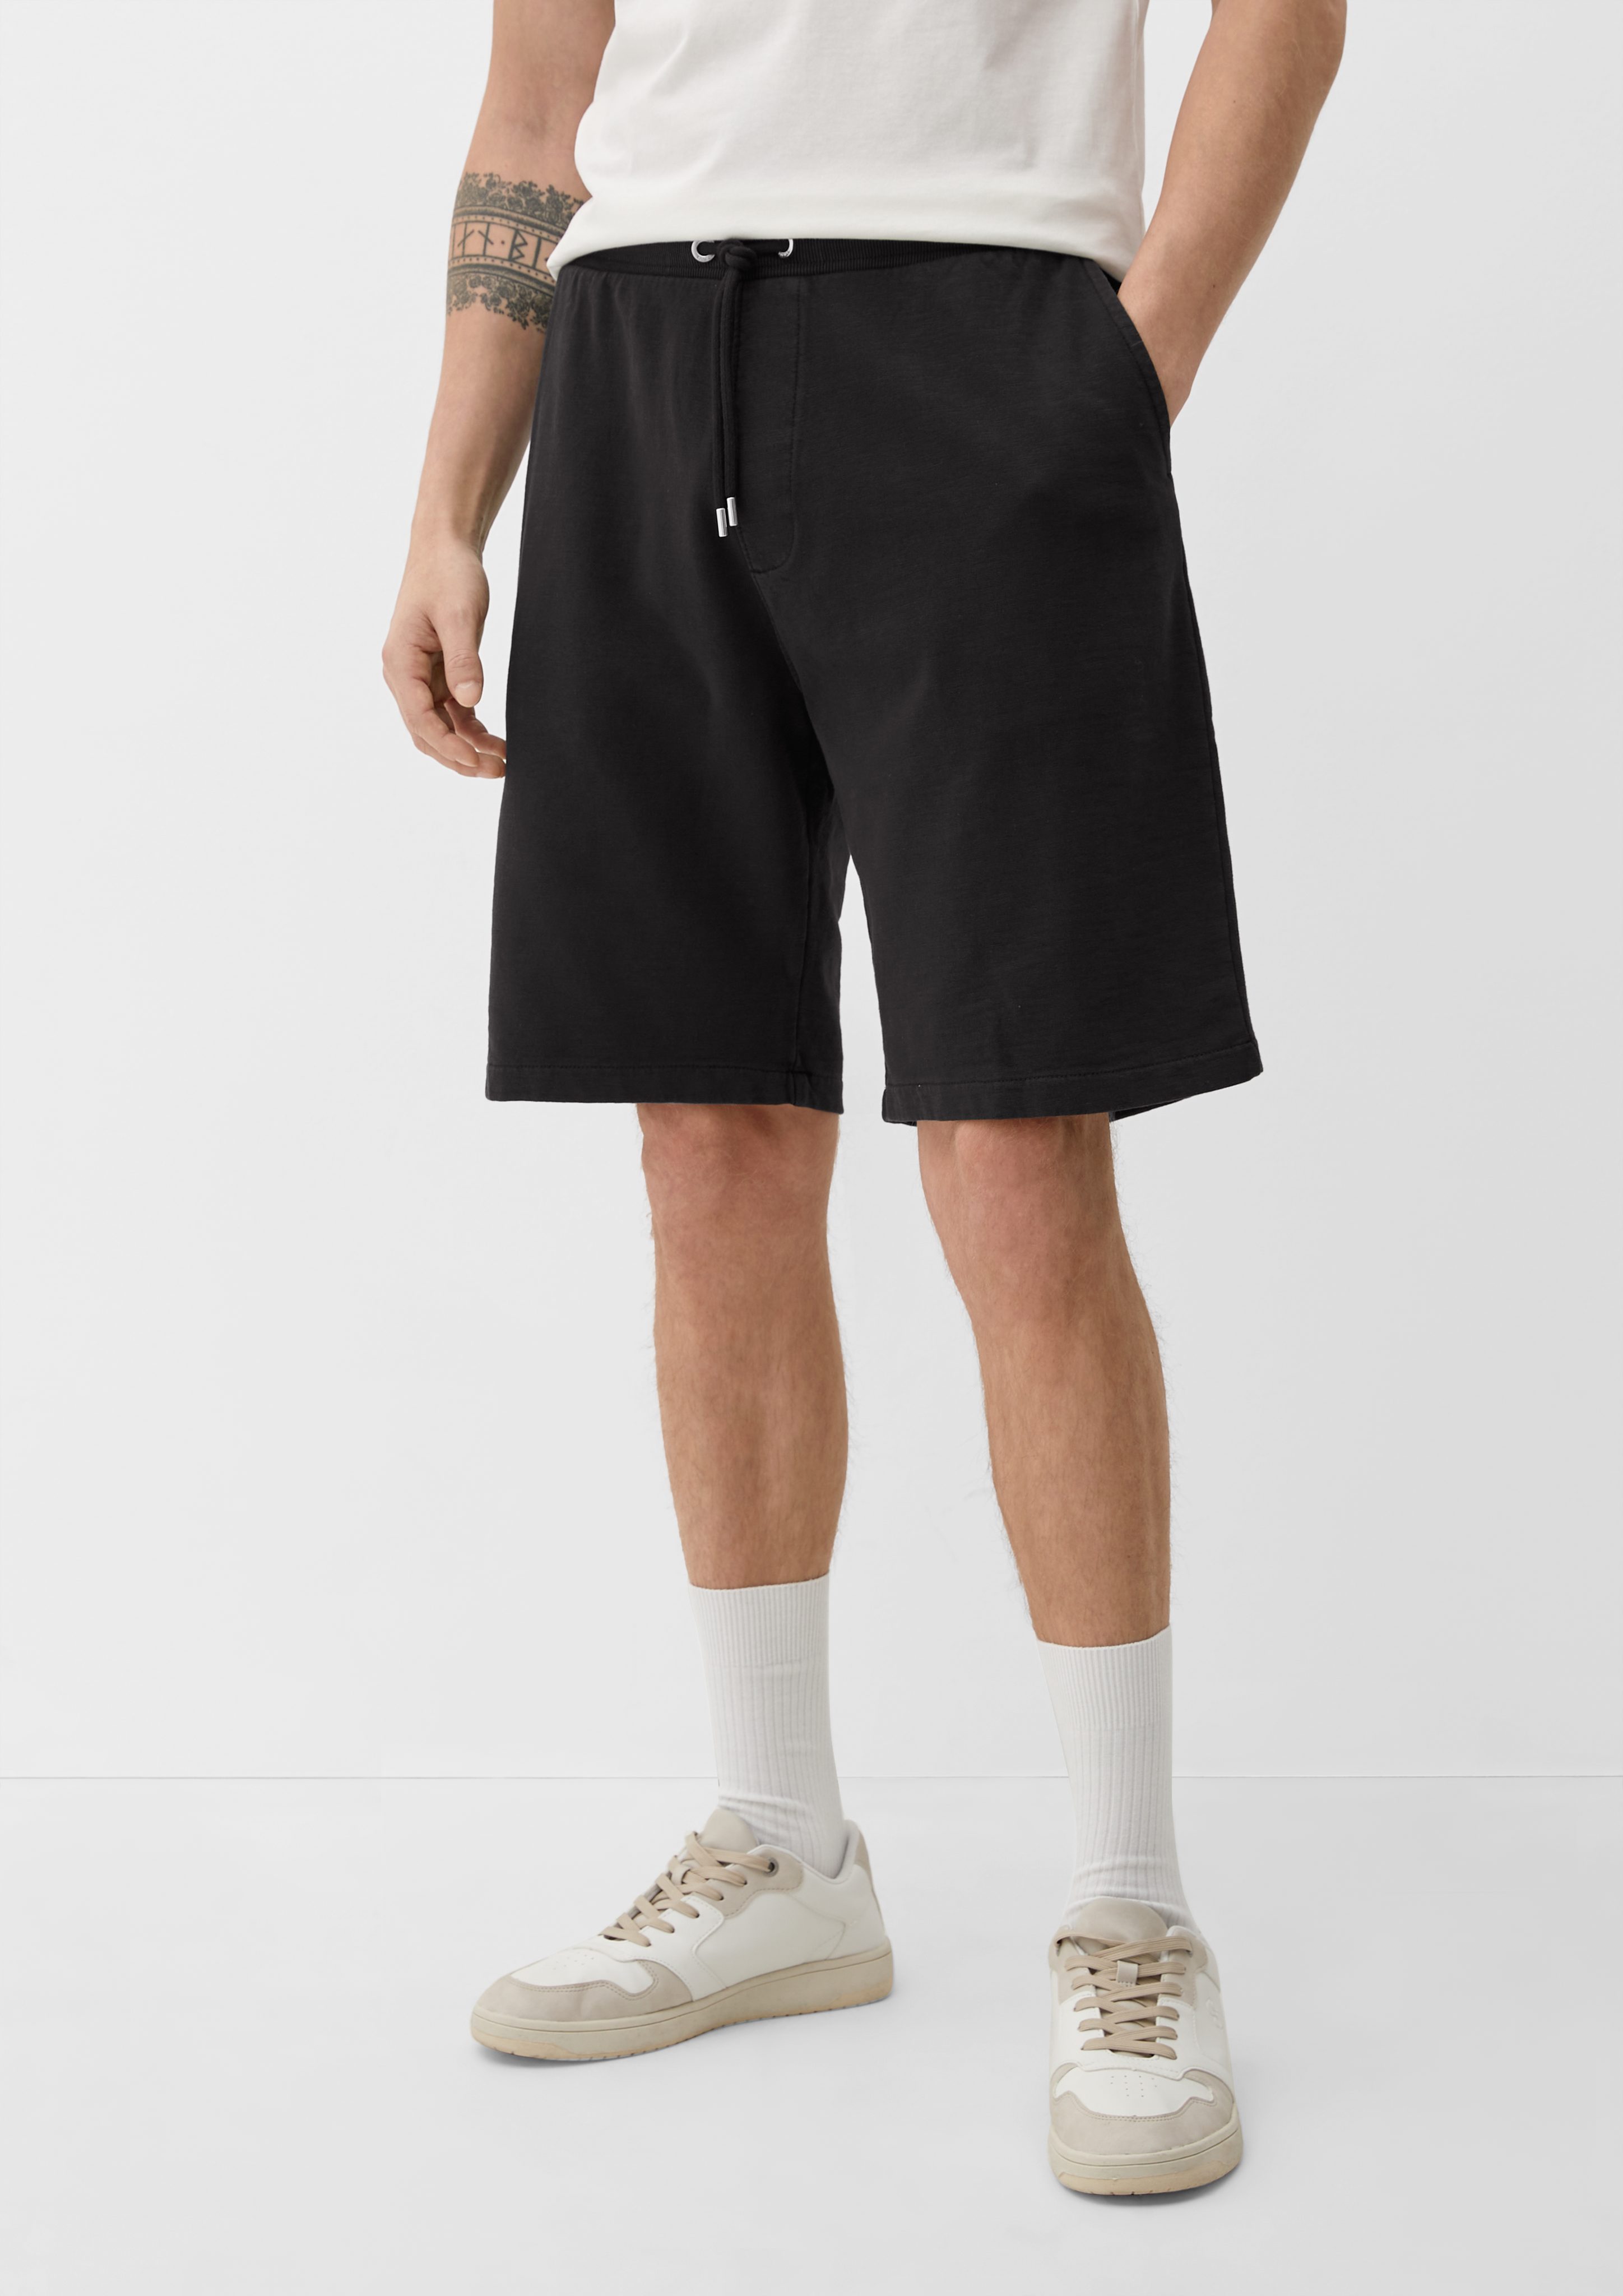 s.Oliver Bermudas Relaxed: Sweatpants mit Elastikbund Durchzugkordel, Garment Dye, Label-Patch schwarz